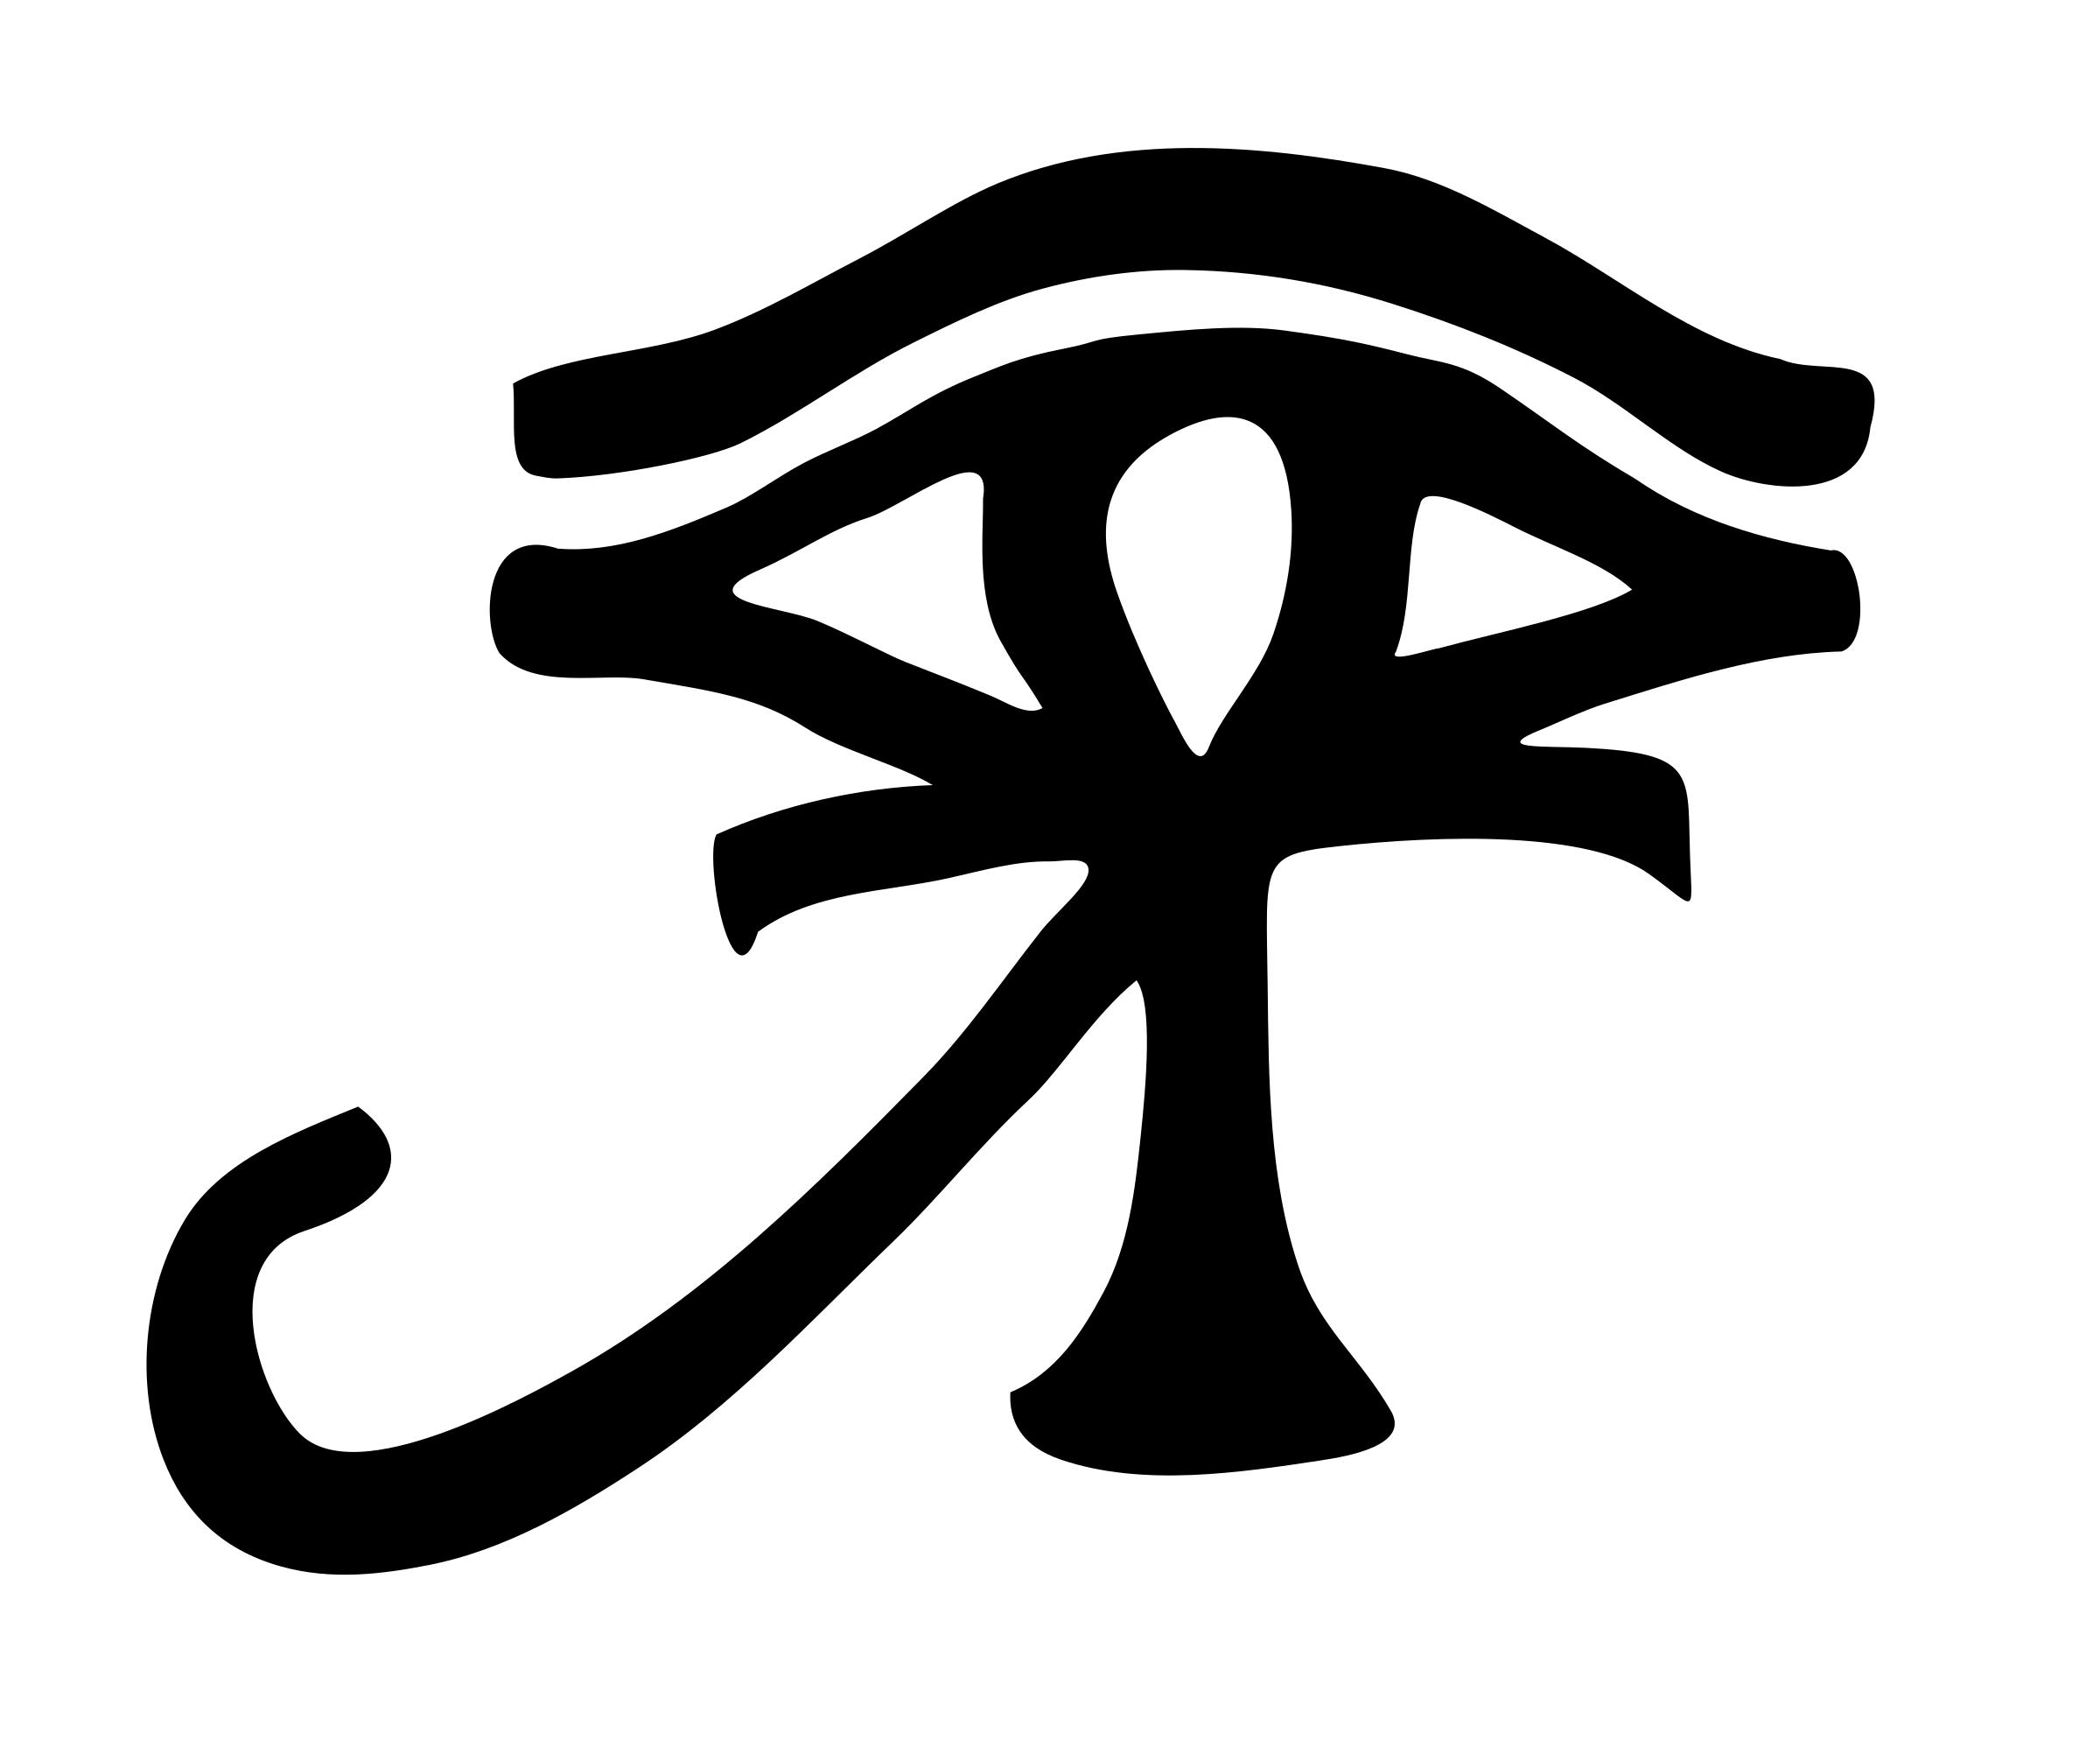 Eye of Ra Ankh - Ojo de Ra Ankh icons